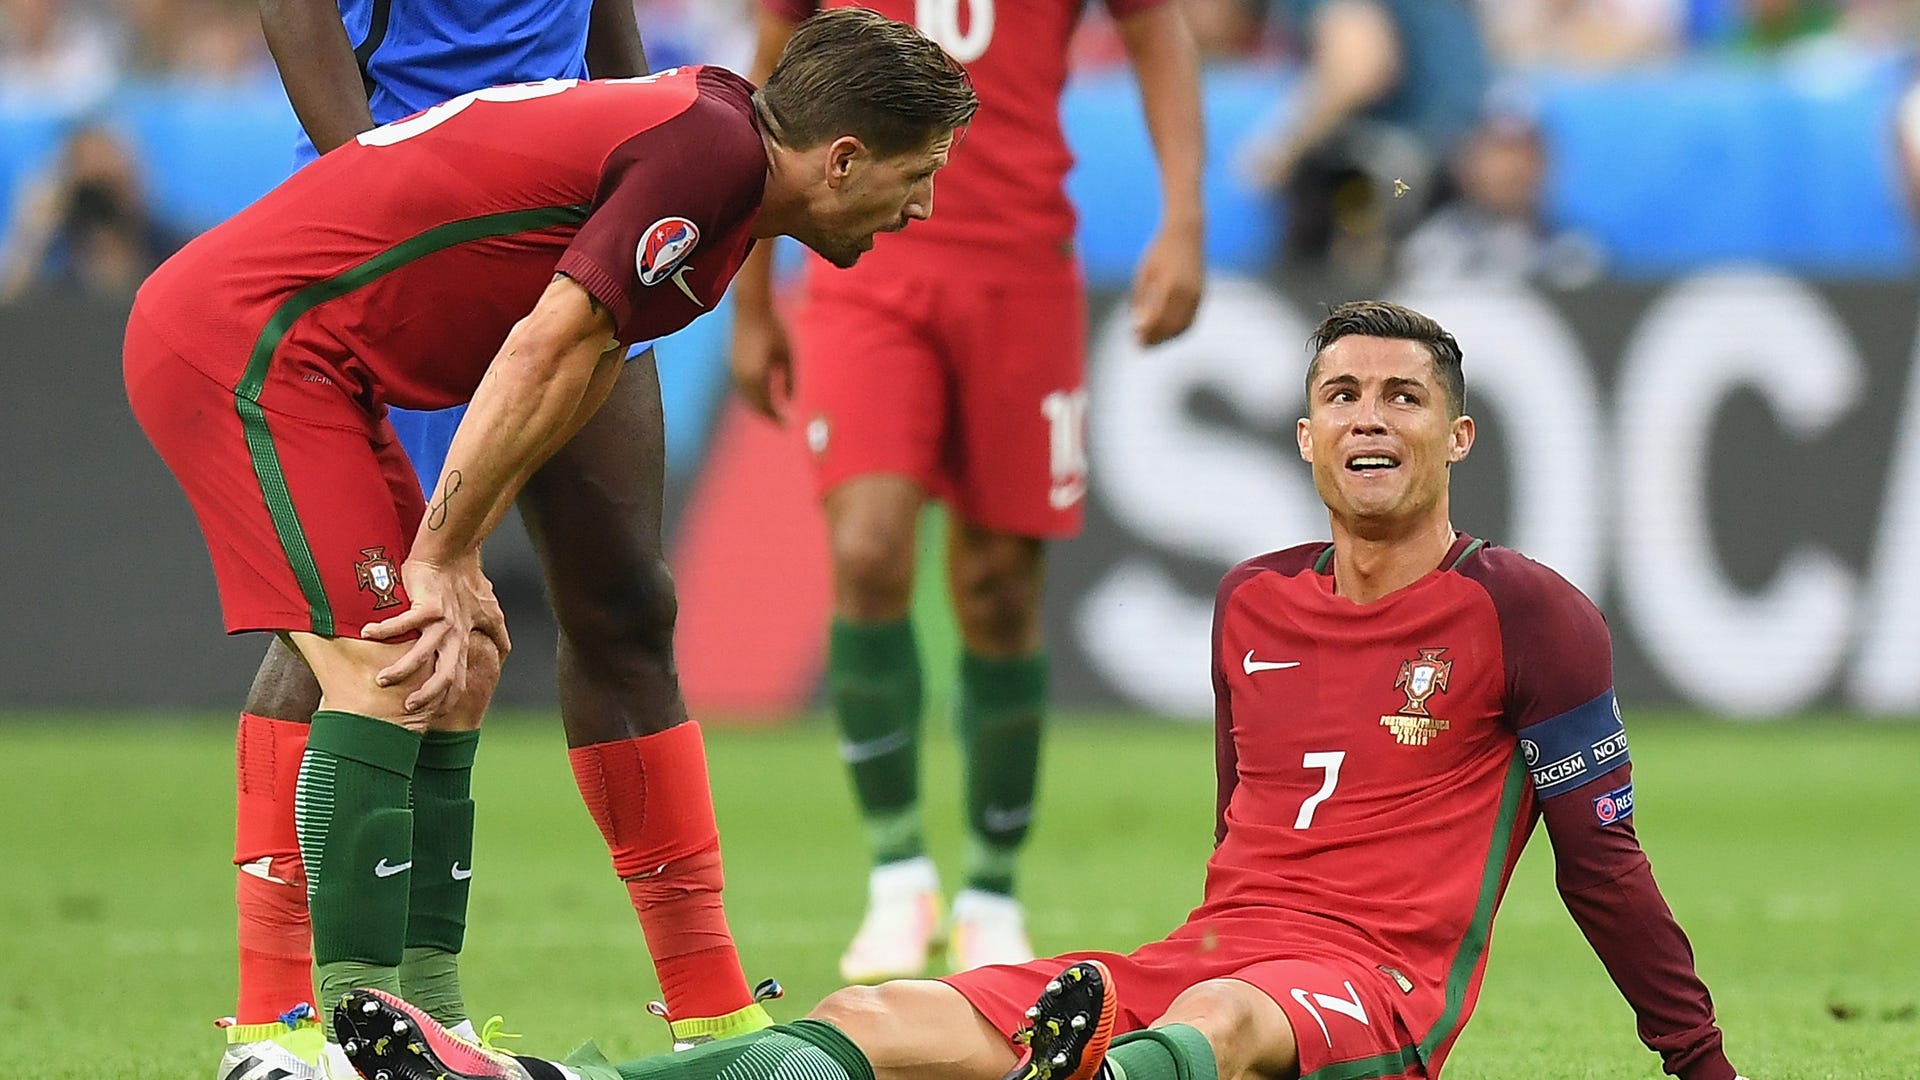 Adrien Silva Cristiano Ronaldo injury Portugal Euro 2016 final